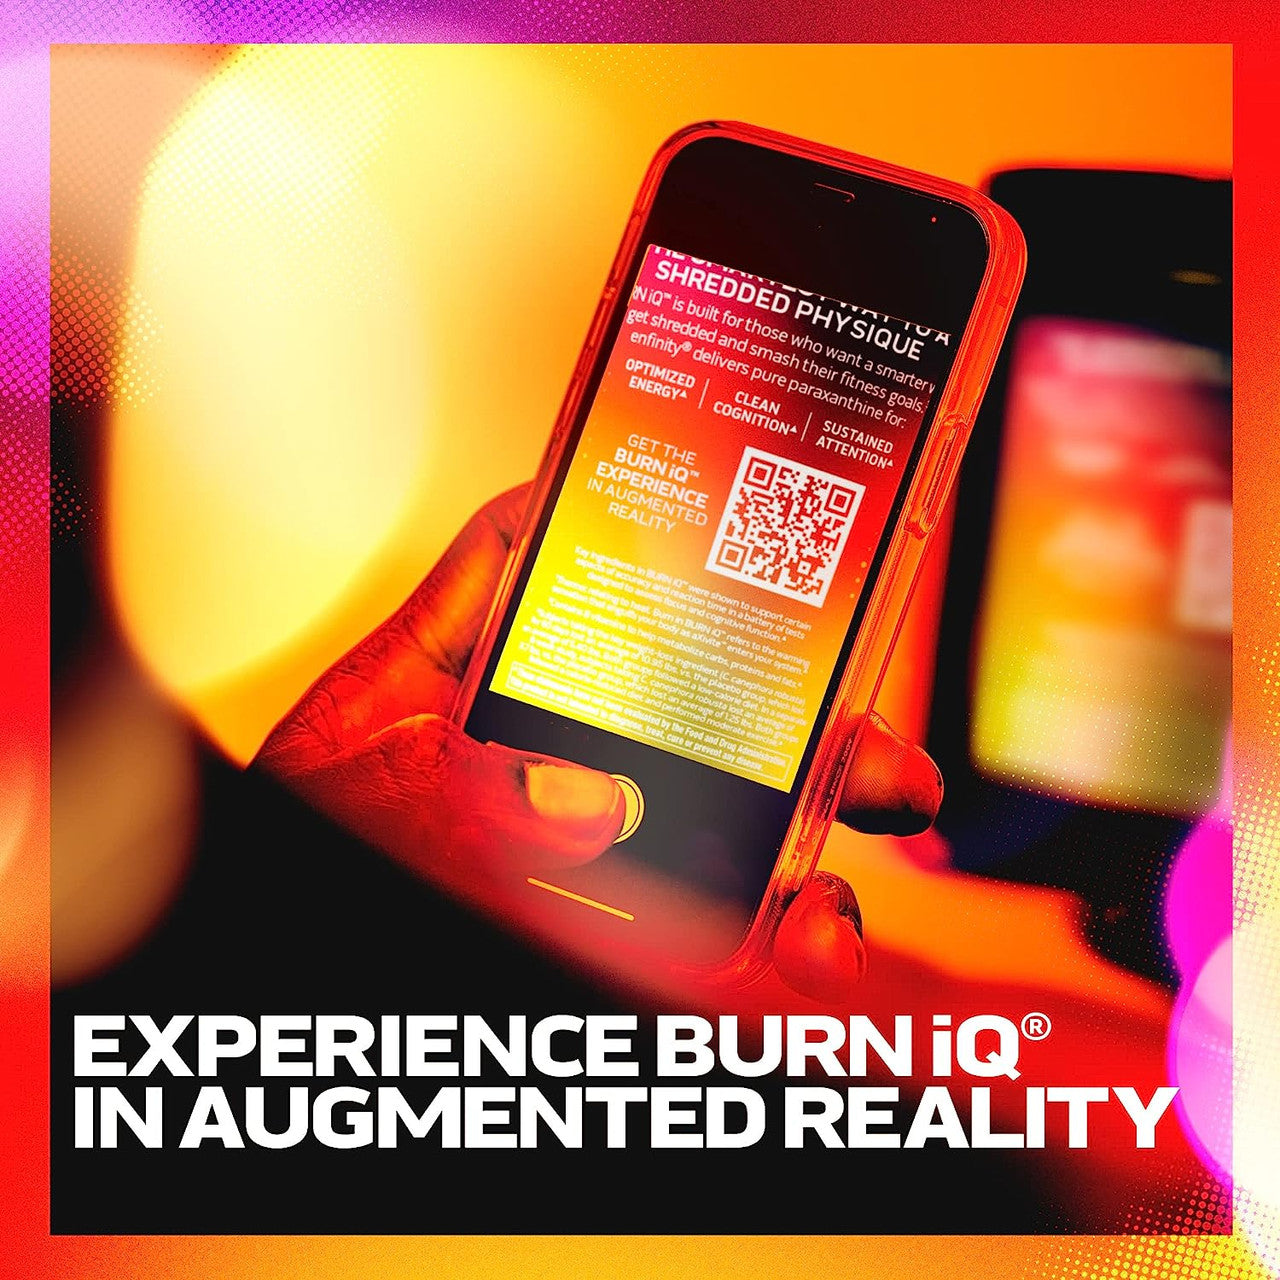 Muscletech Burn iQ augmented reality